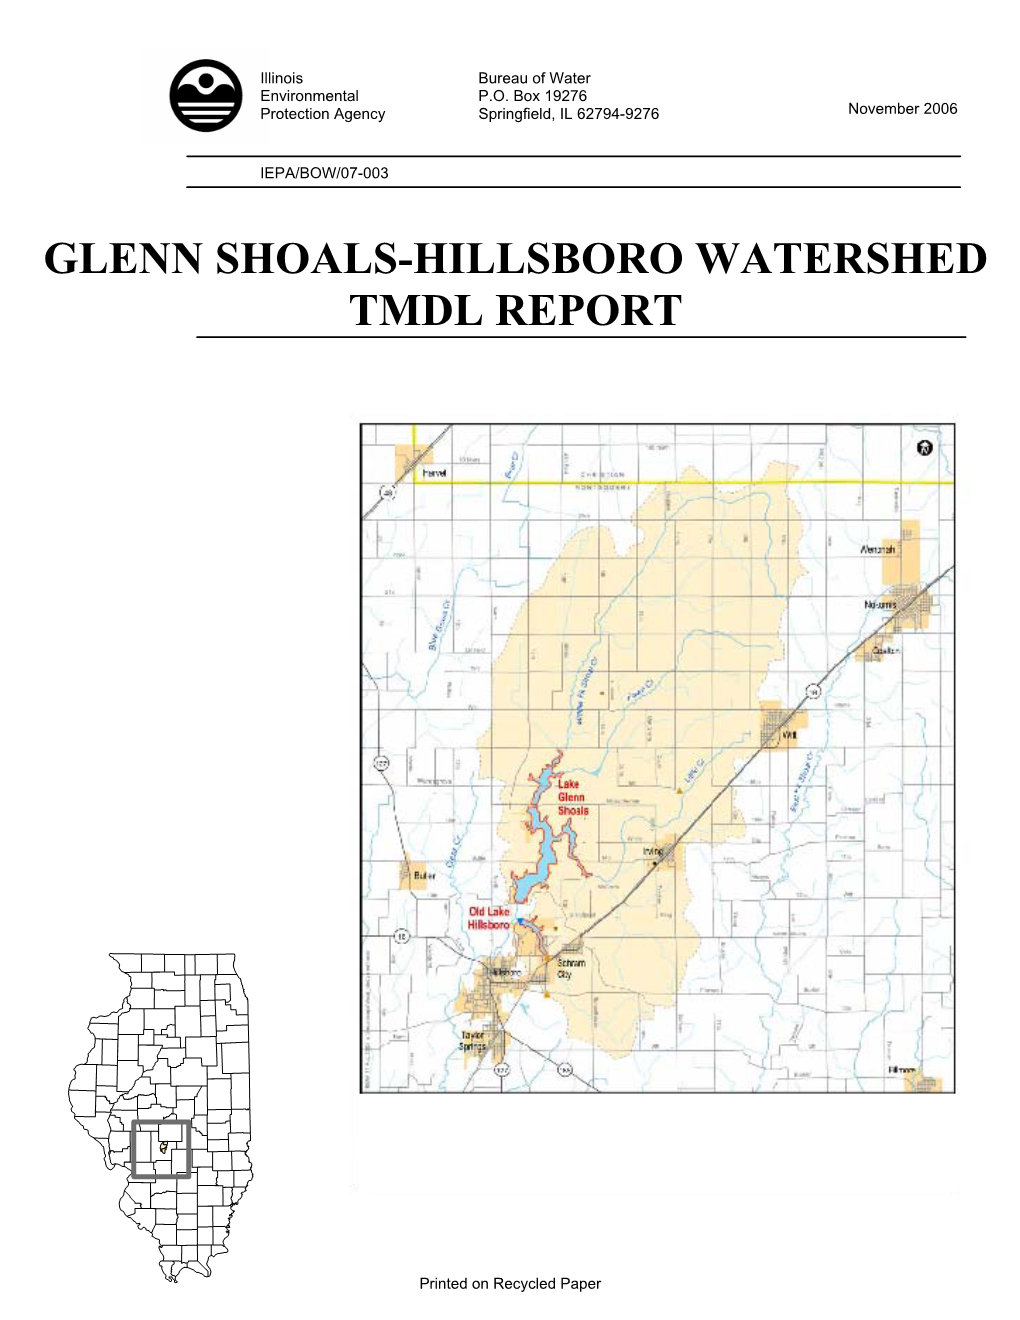 Final Report Glen Shoals/Hillsboror Watershed